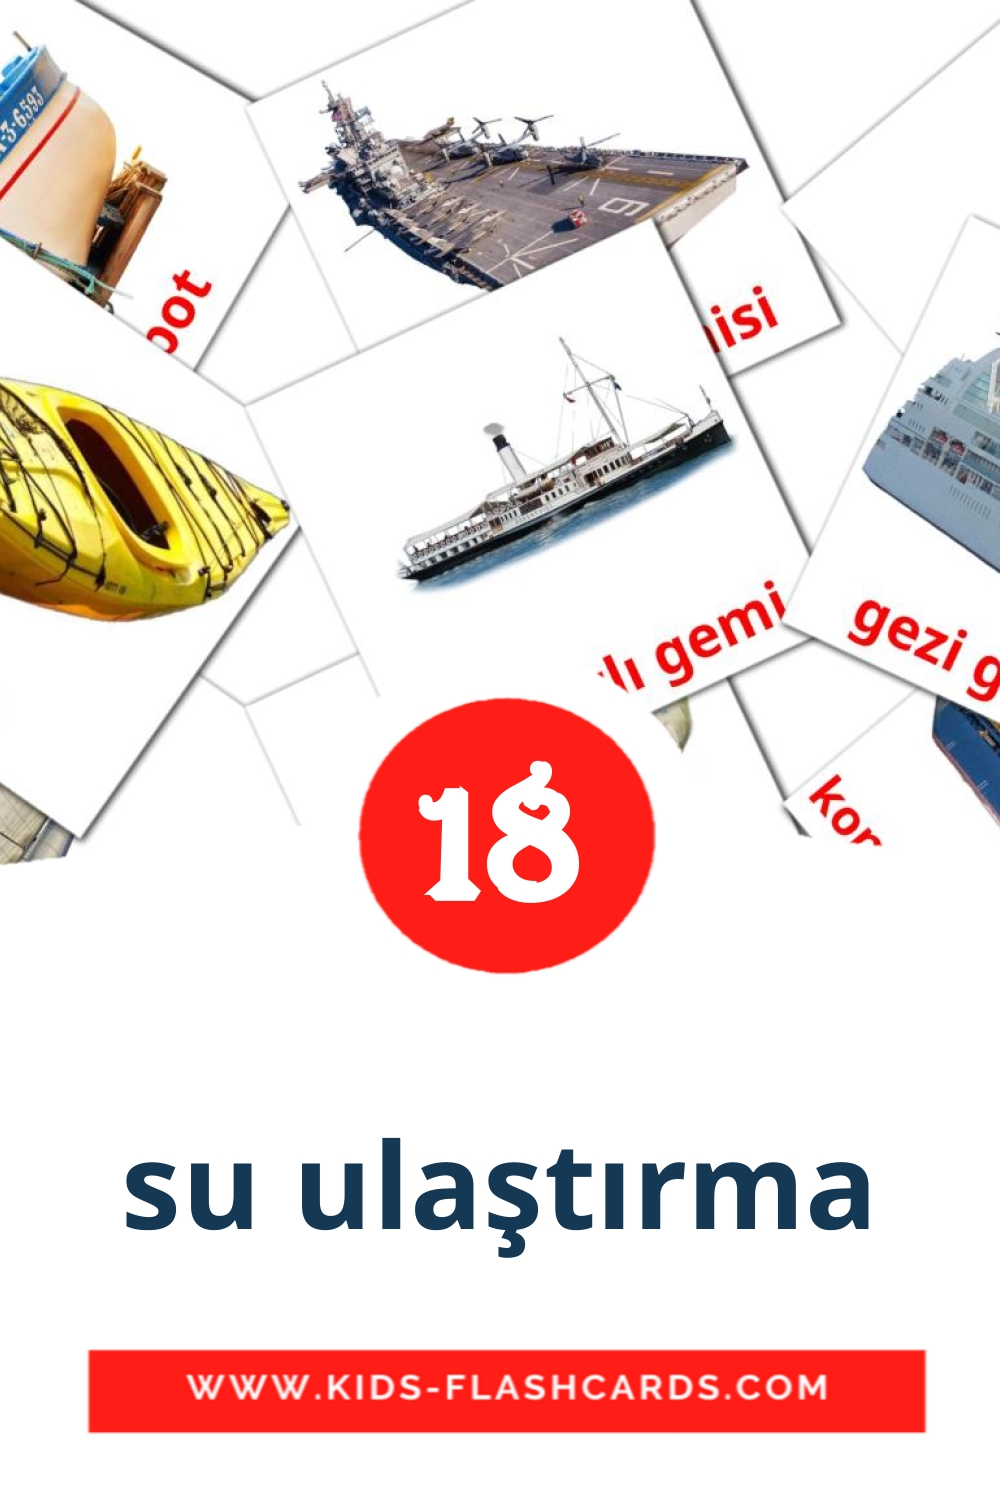 18 tarjetas didacticas de su ulaştırma para el jardín de infancia en turco